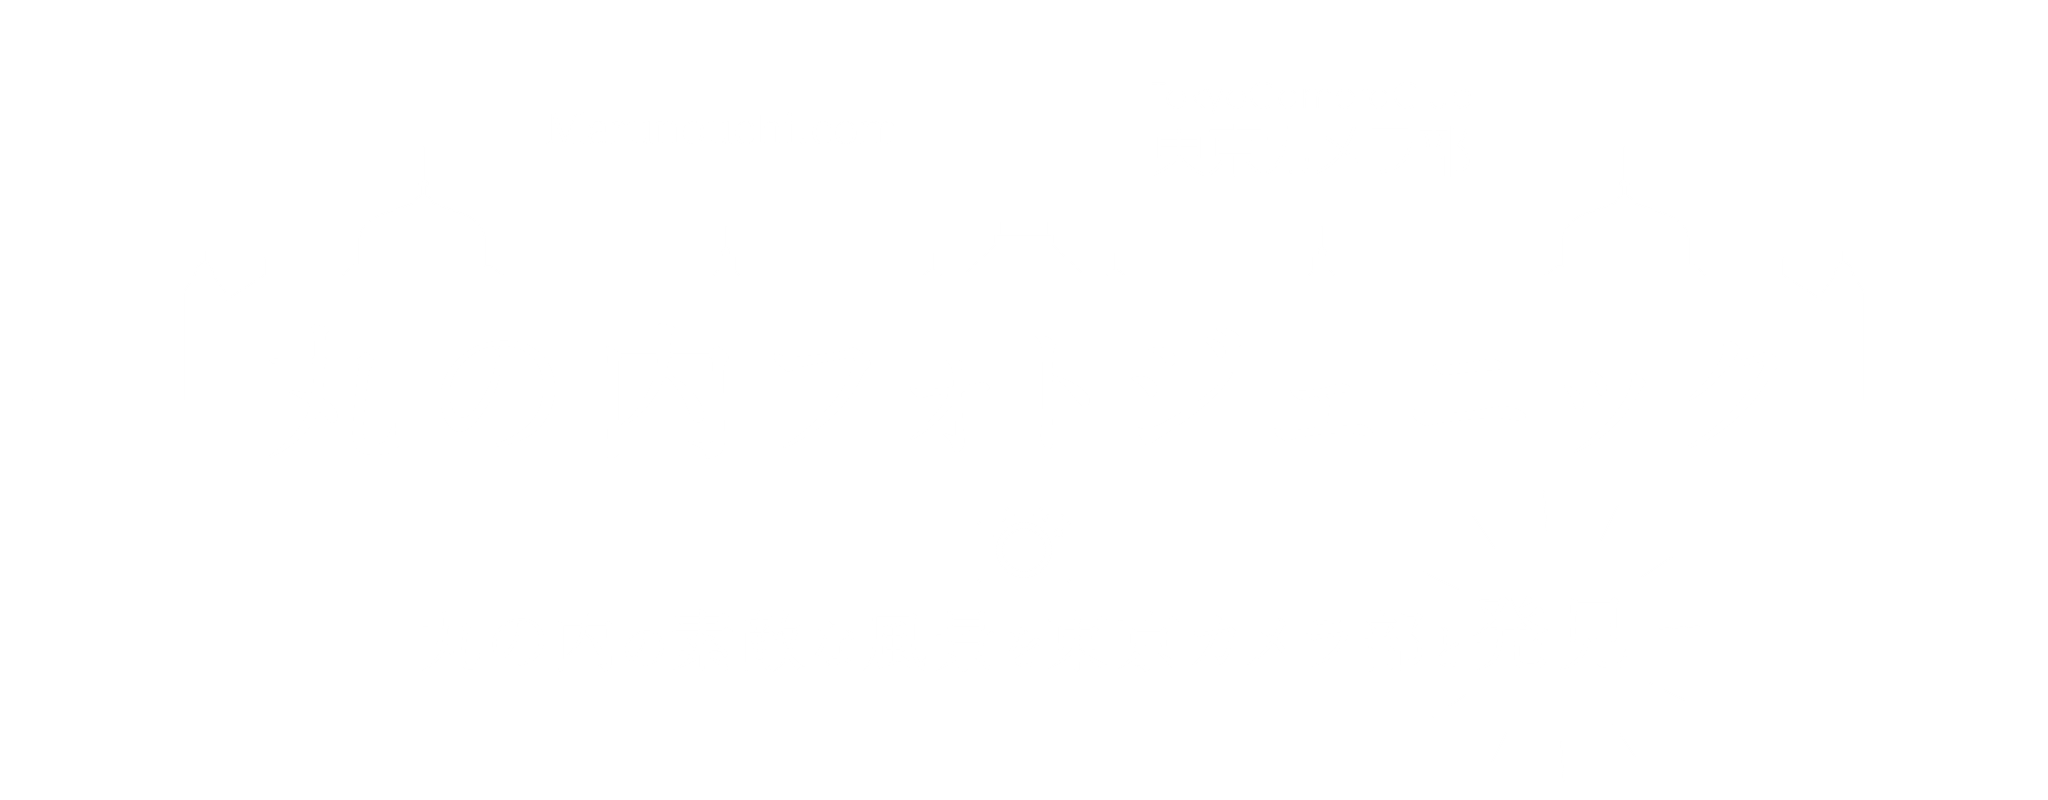 丸の内フォトジェニック 丸の内の素敵な風景を東京カメラ部と発見